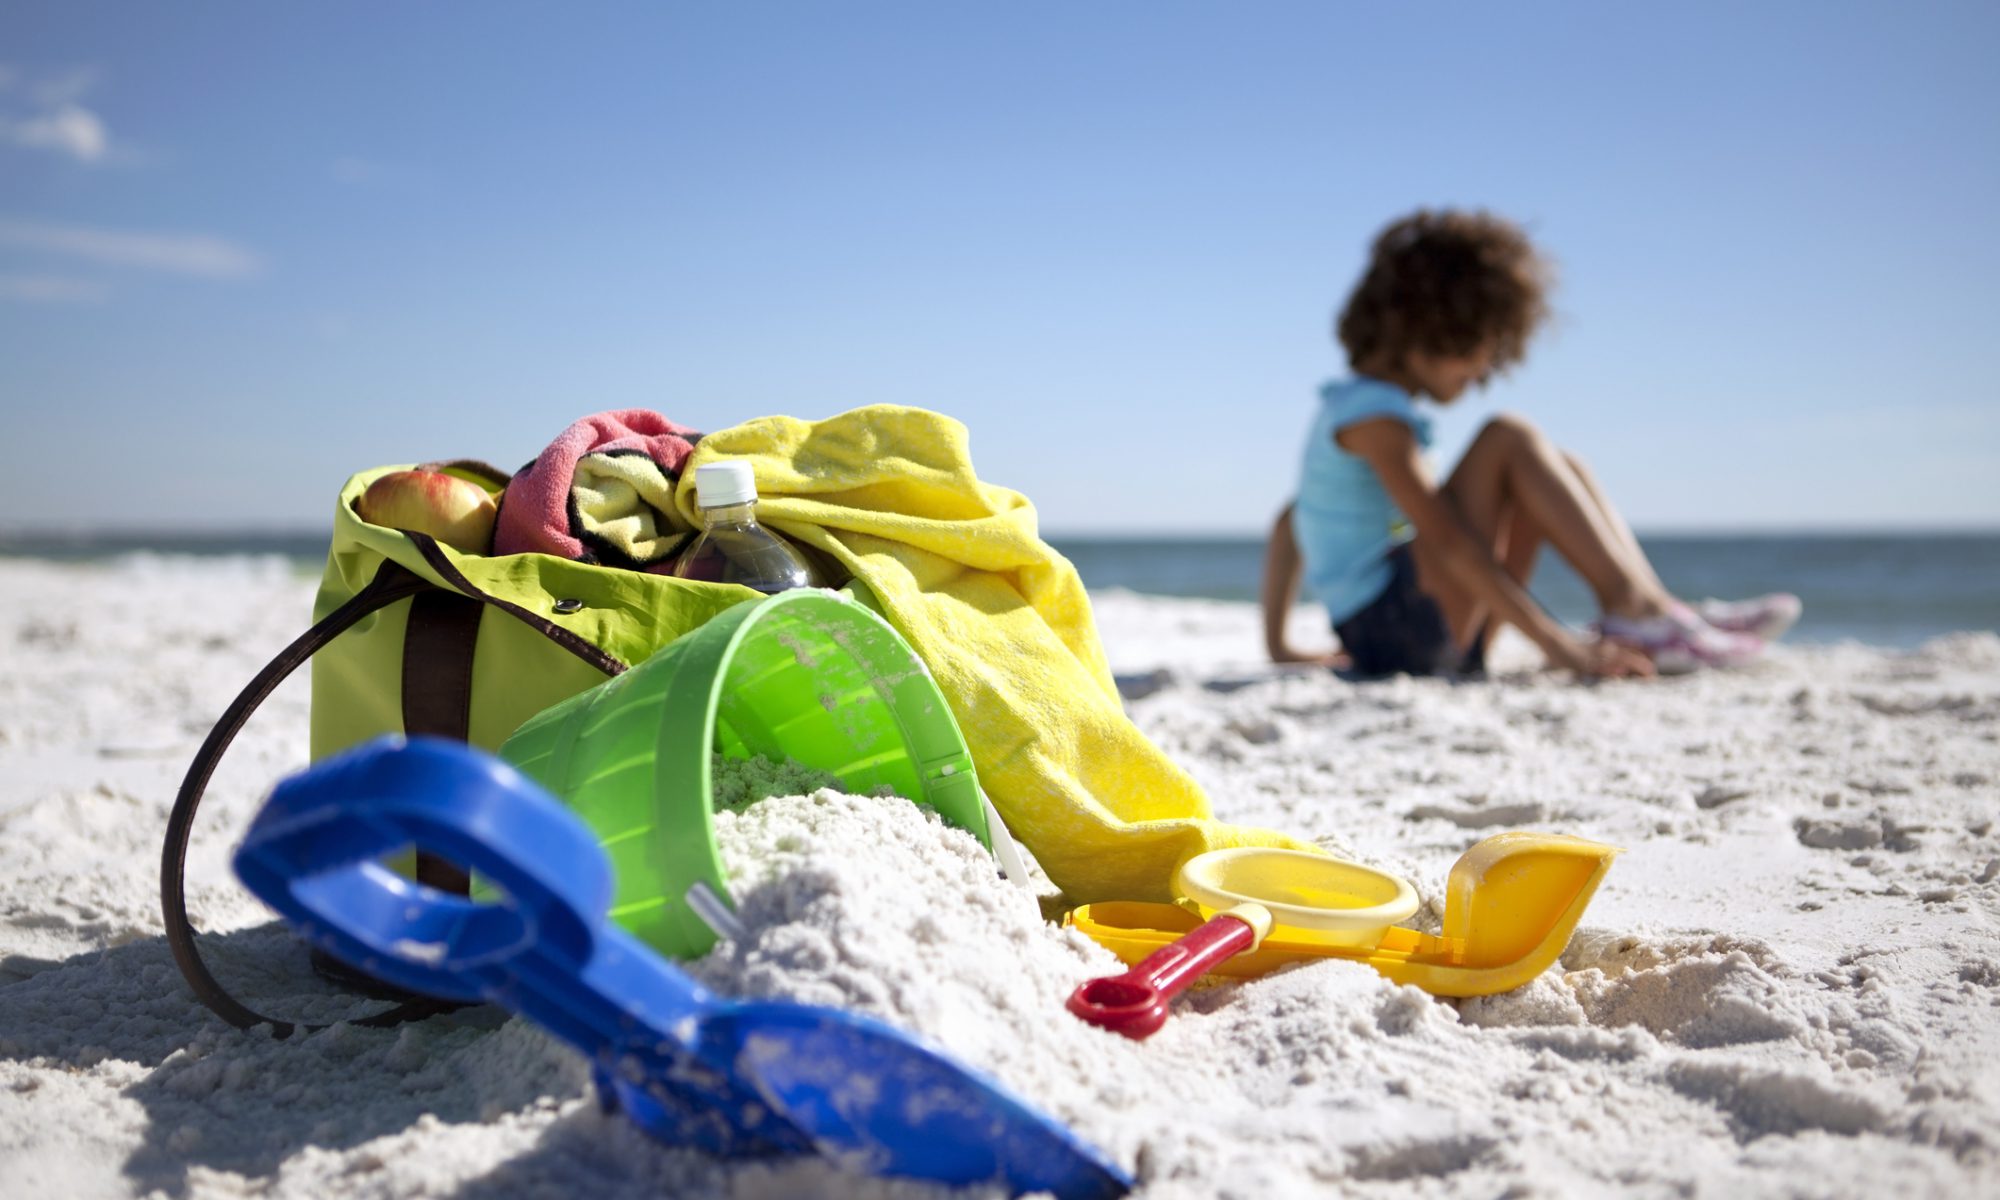 Beach bag, beach toys and a little girl on the beach.